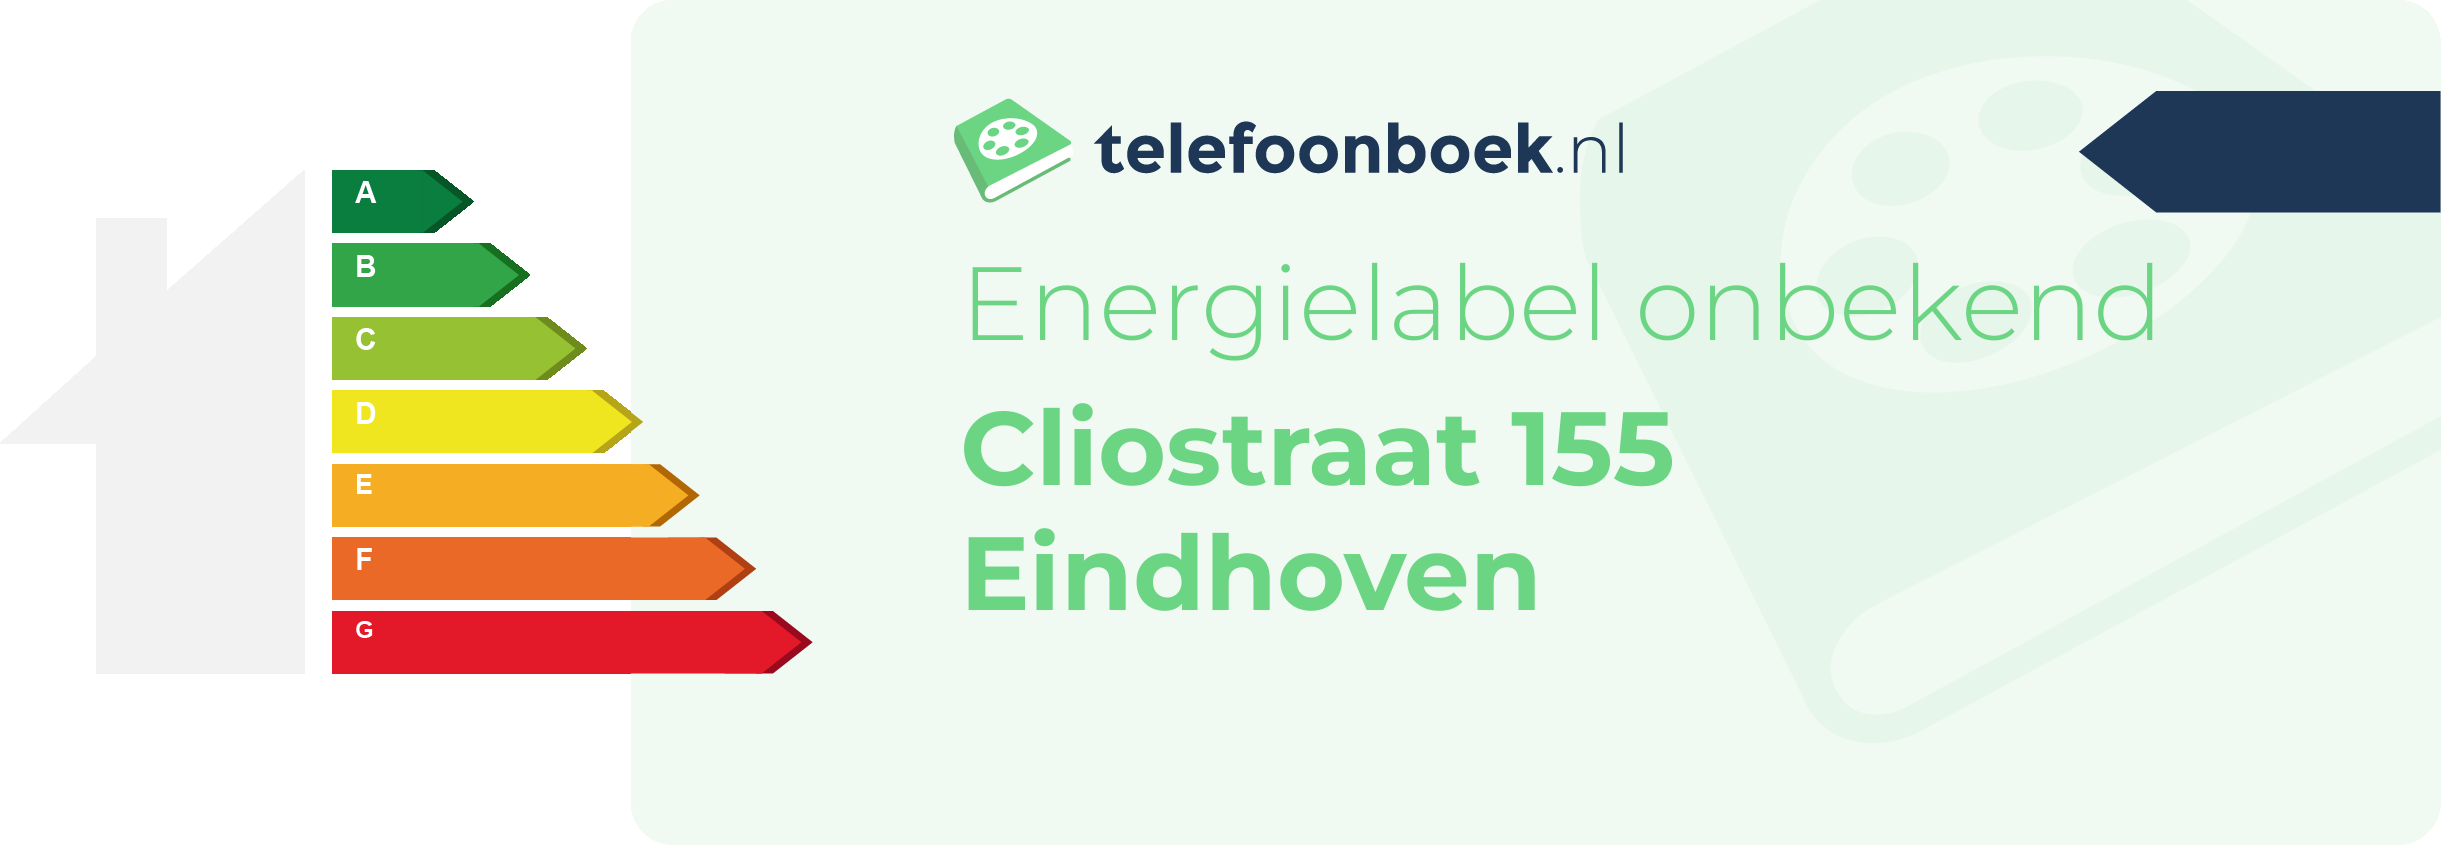 Energielabel Cliostraat 155 Eindhoven